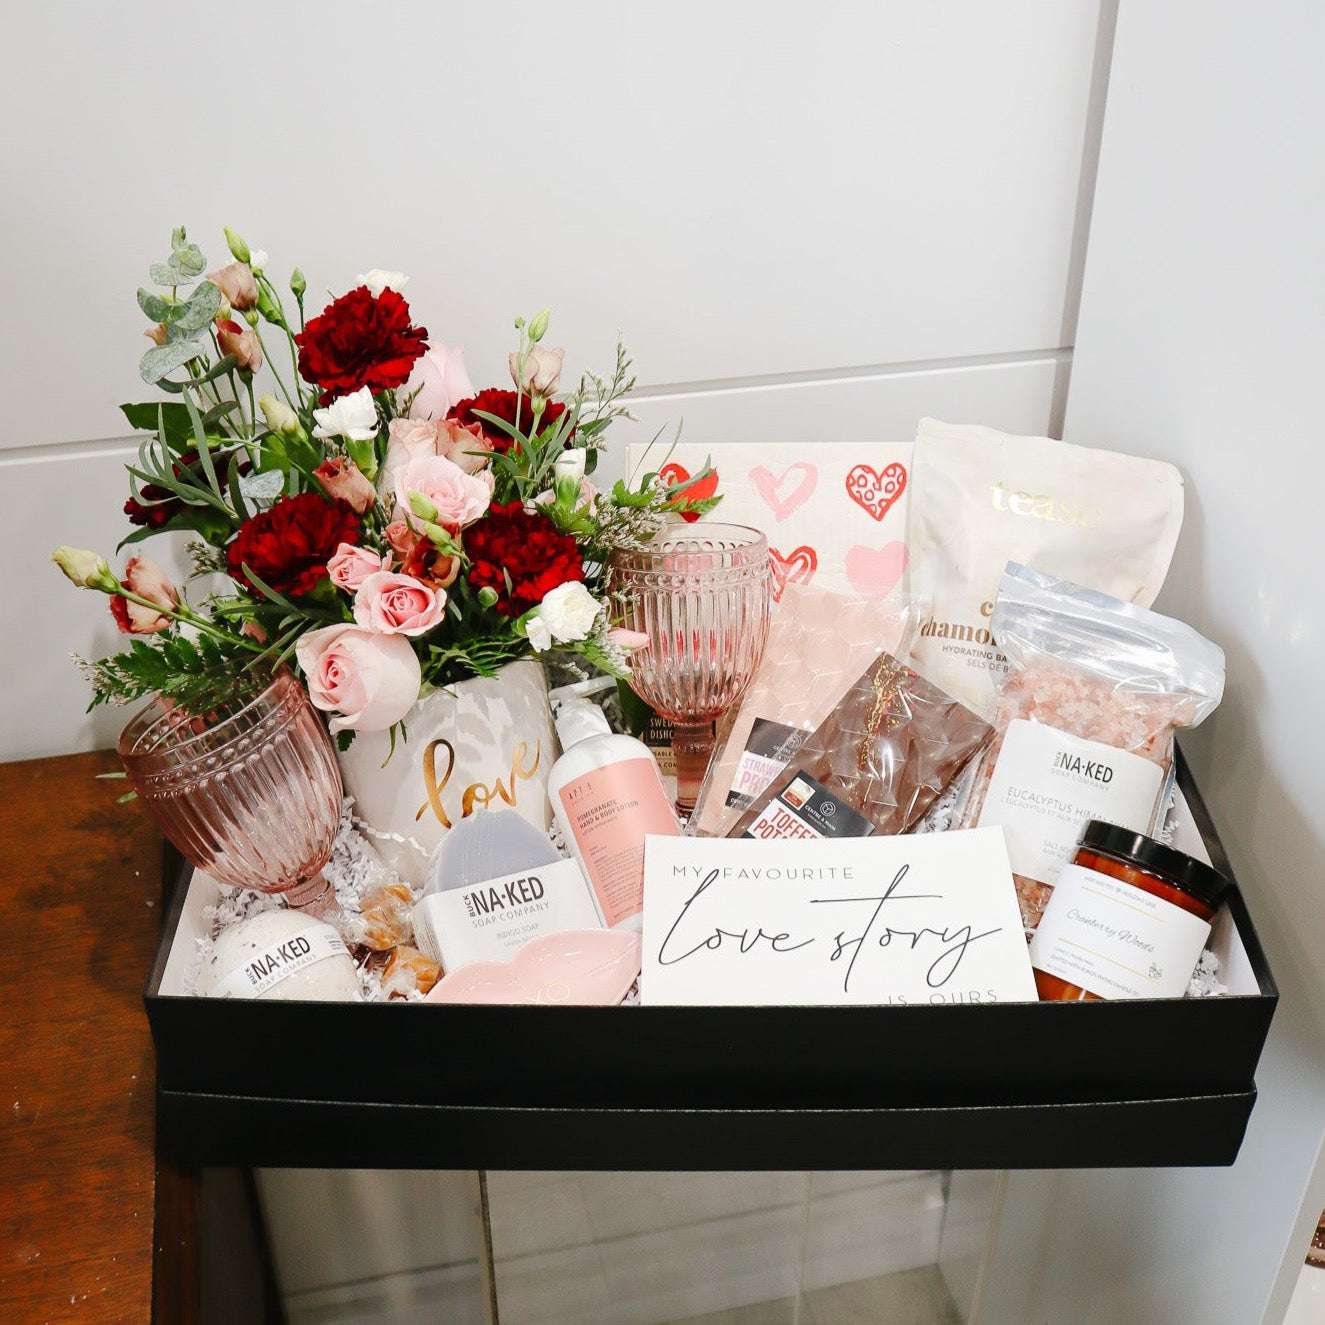 The Date Night Gift Box